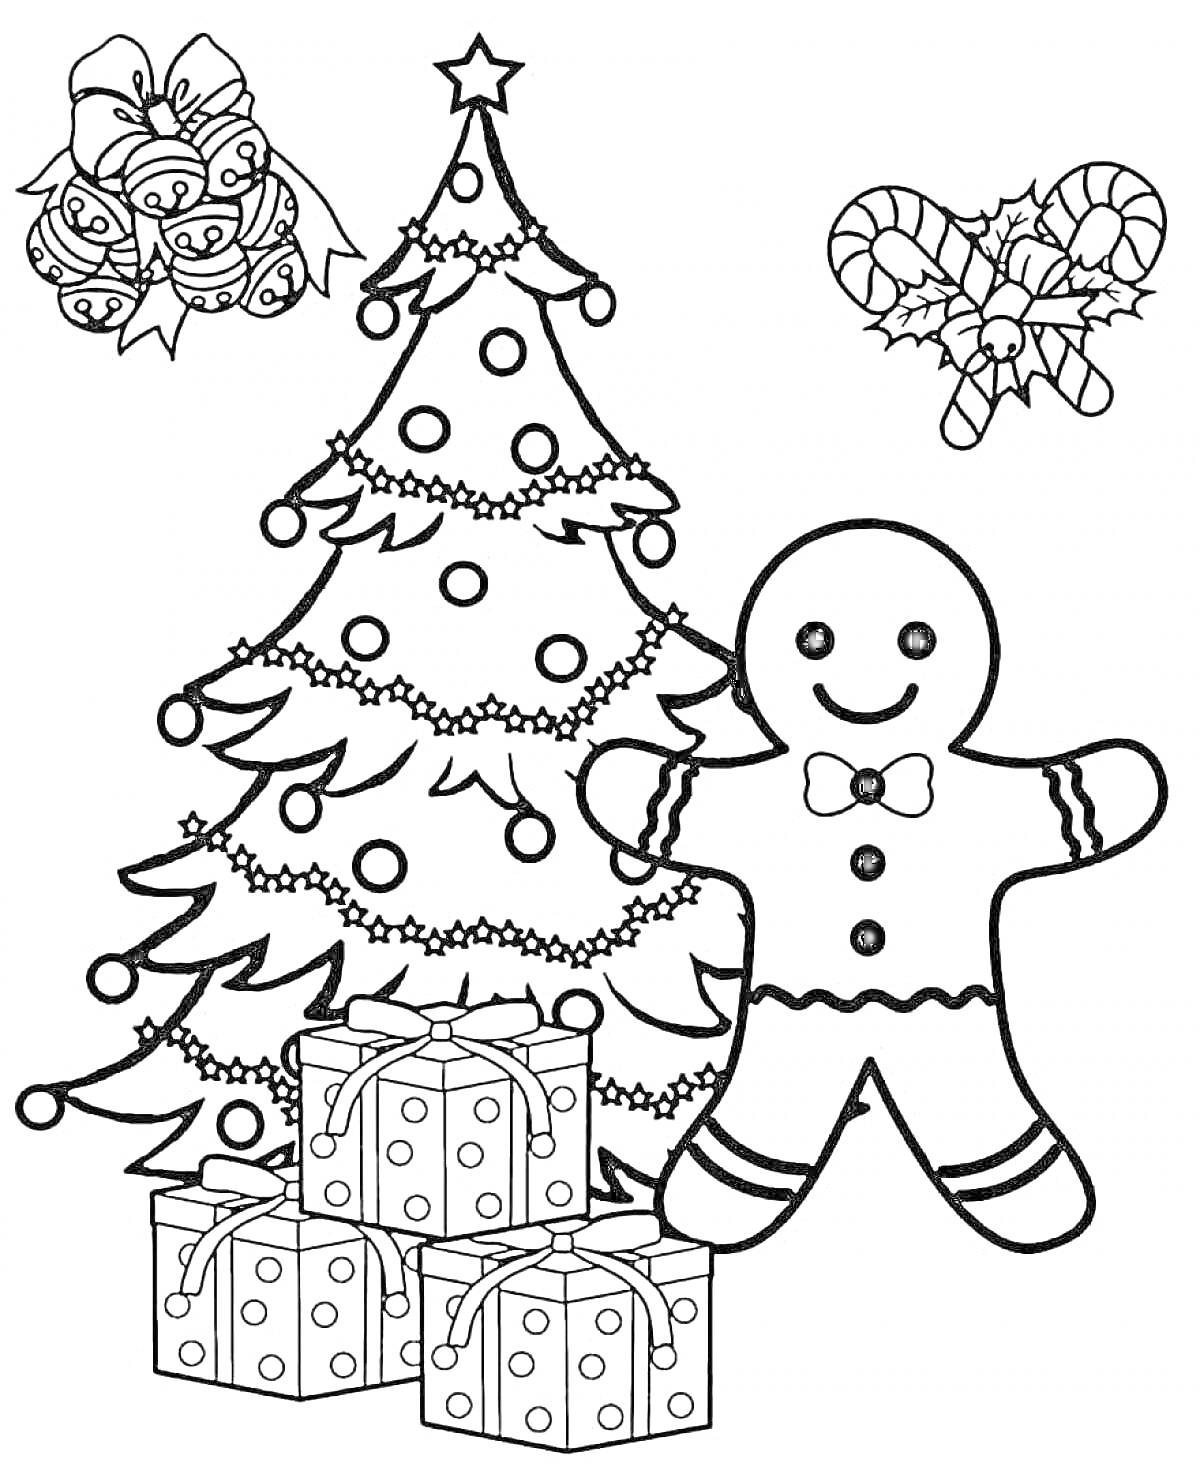 Раскраска Елка новогодняя с игрушками, пряничный человечек, подарки, новогодний венок, леденцы, гирлянда.